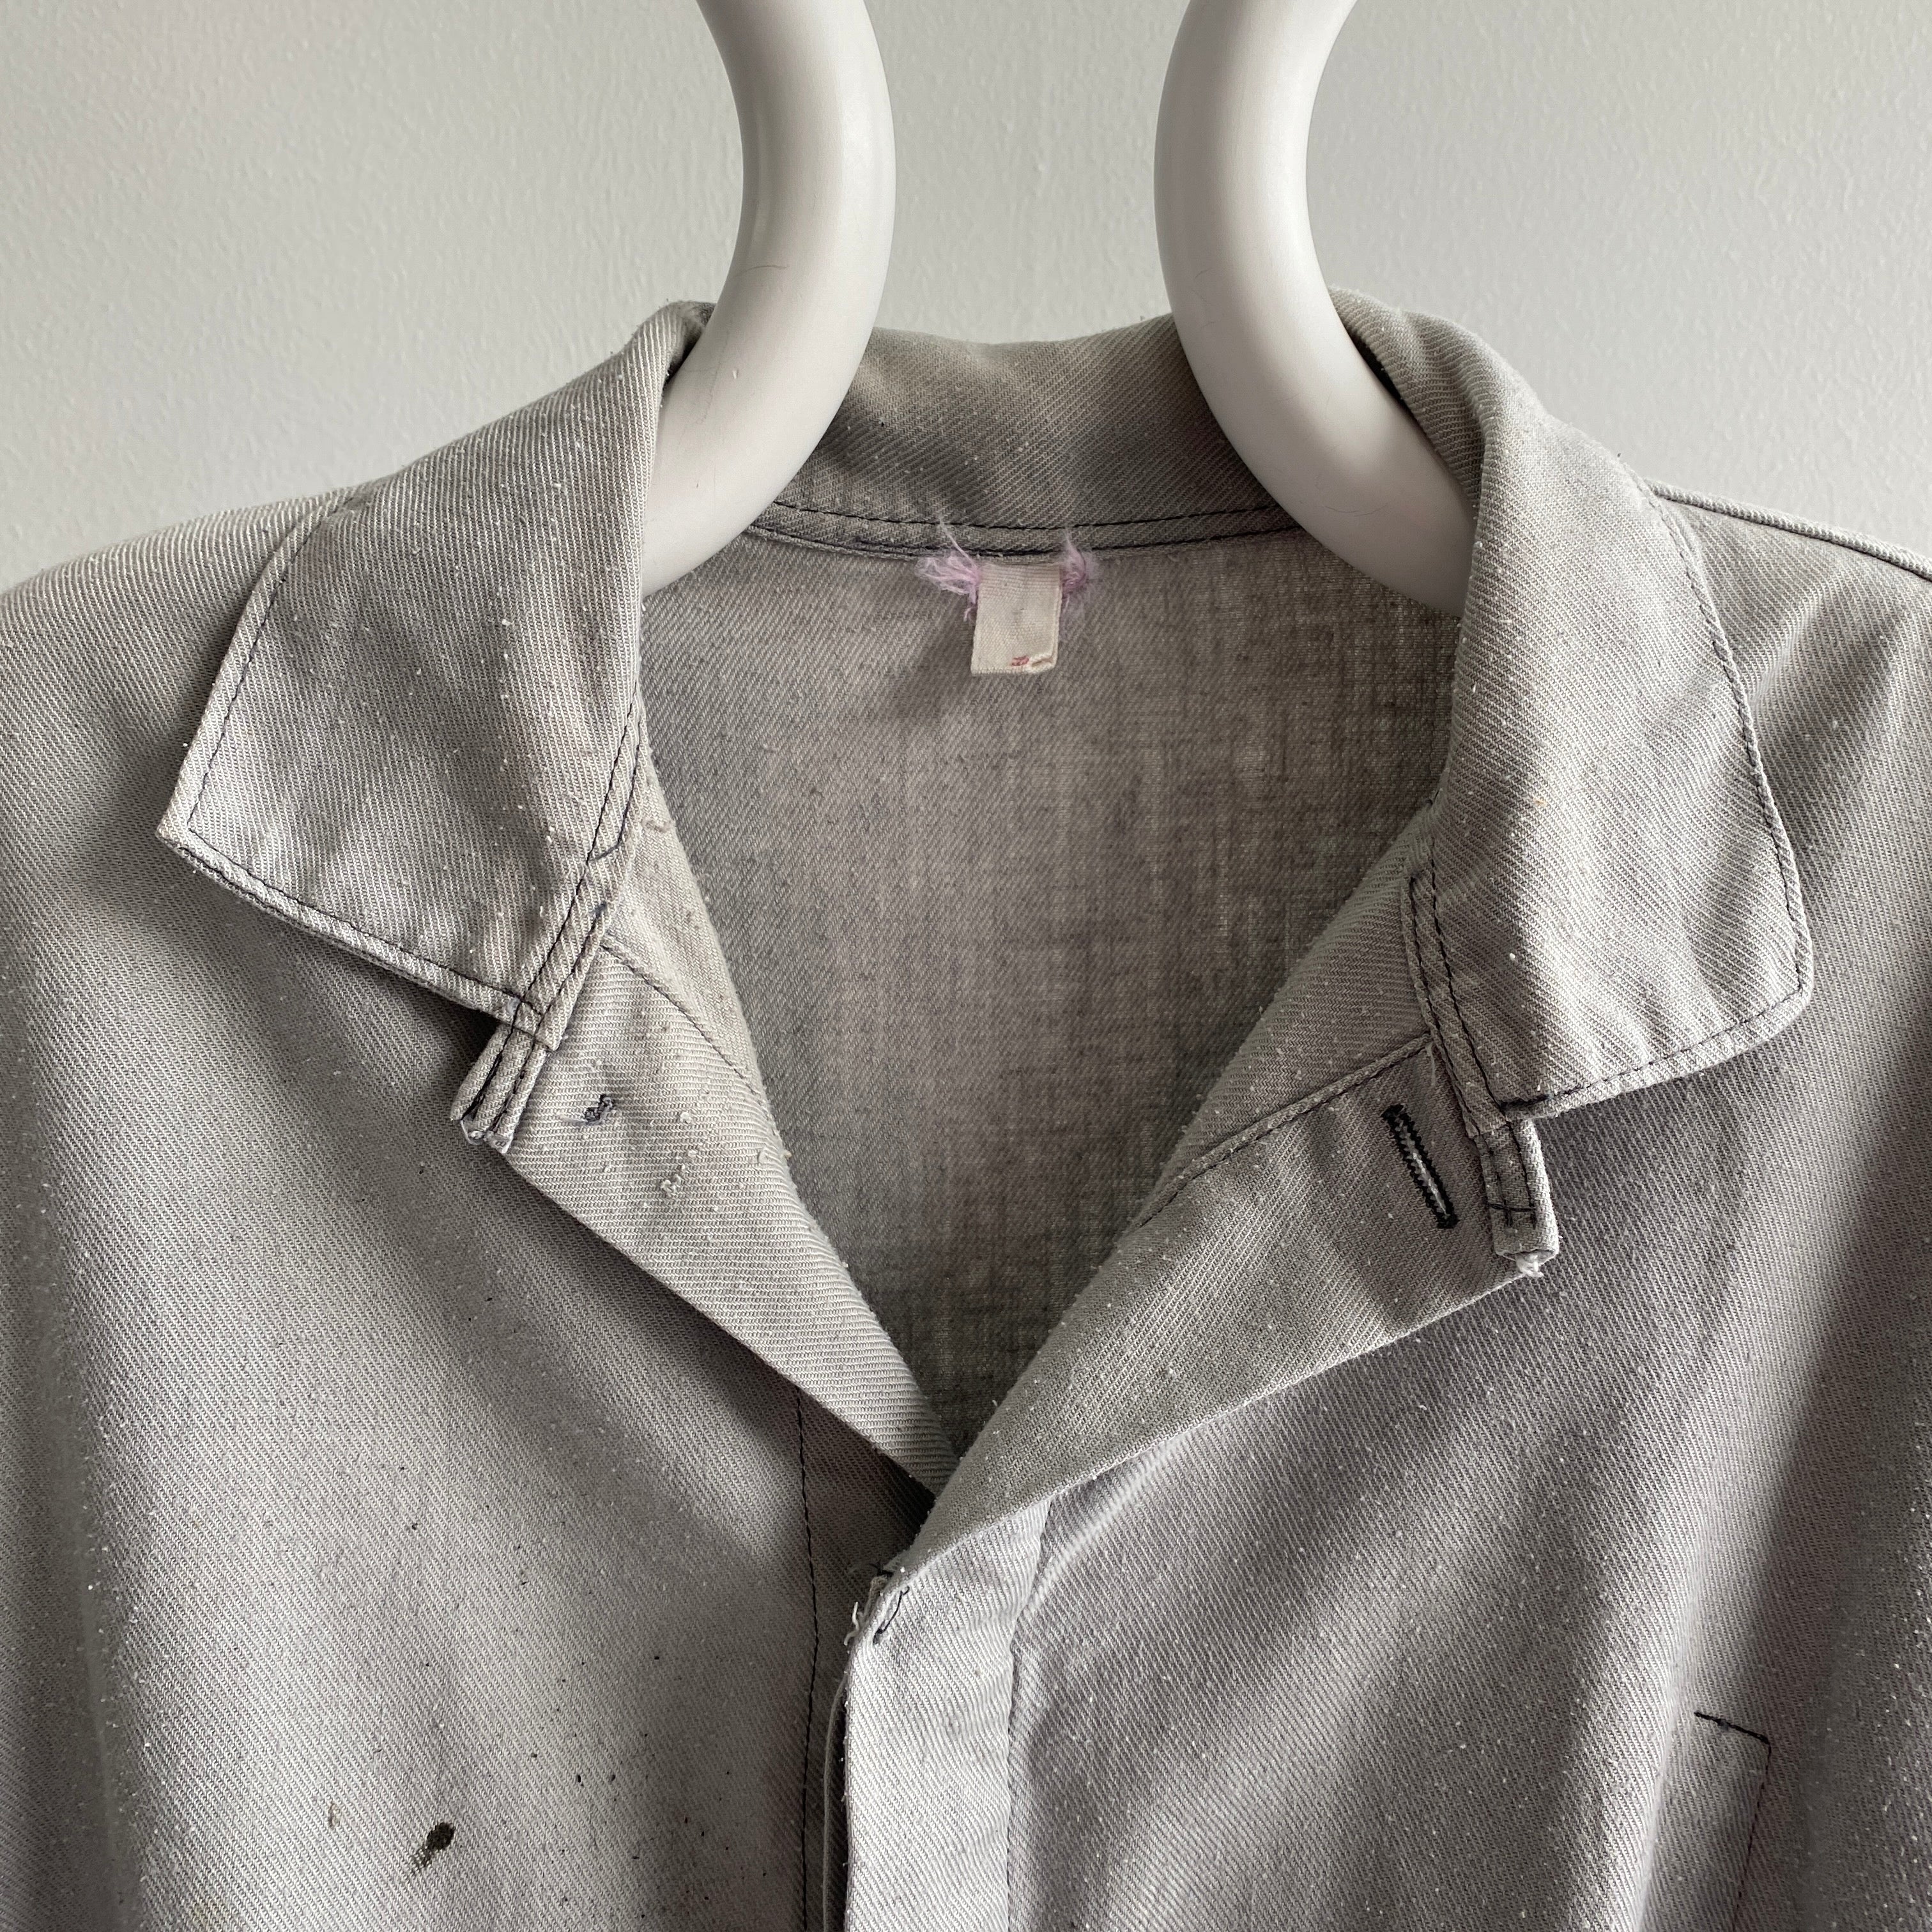 Manteau de corvée en coton européen gris clair des années 1970/80 - Taille plus grande